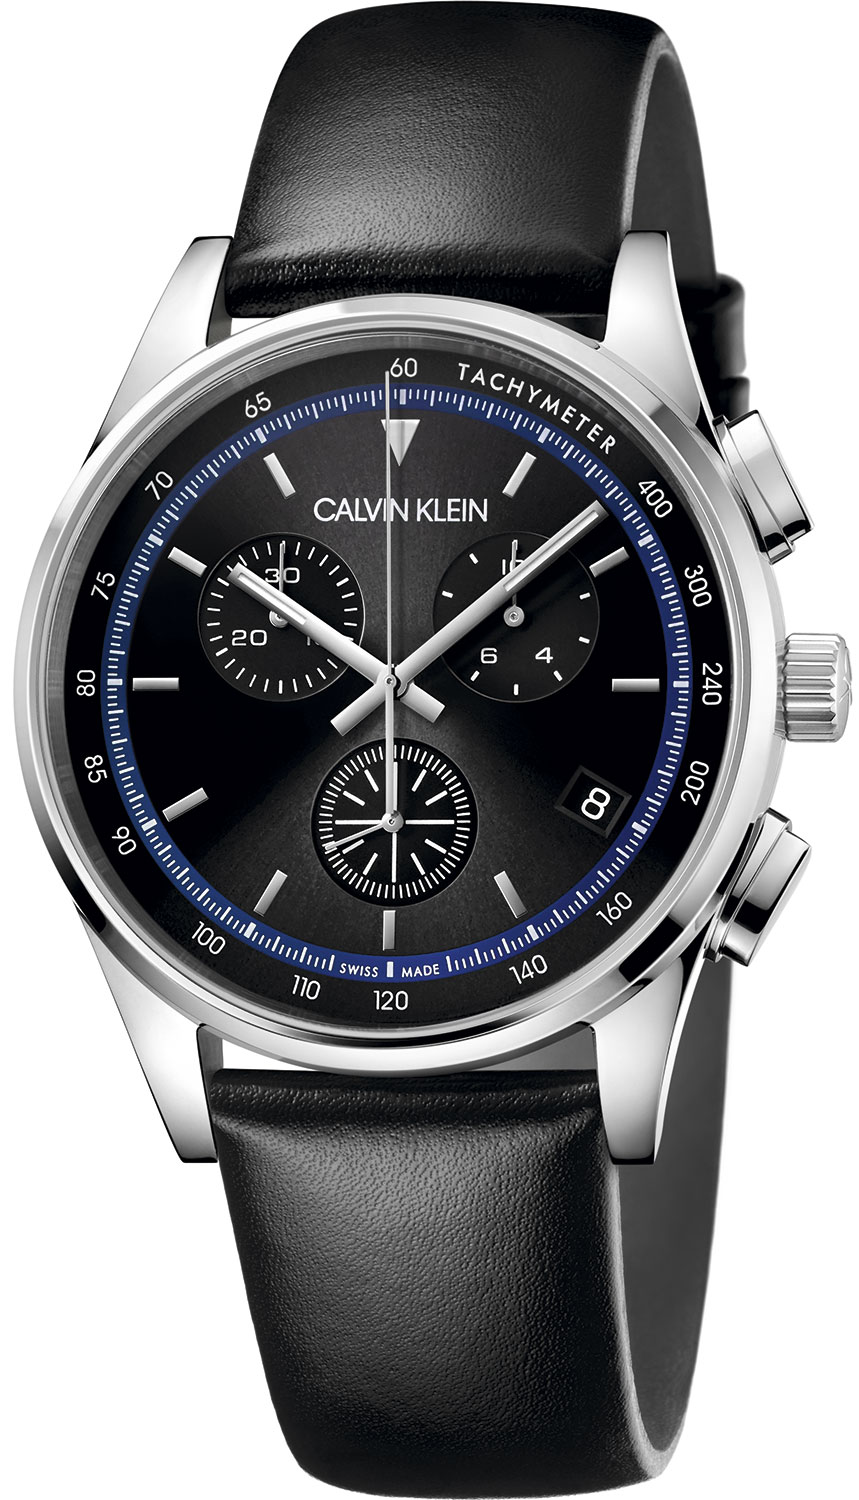 Швейцарские наручные часы Calvin Klein KAM271C1 с хронографом